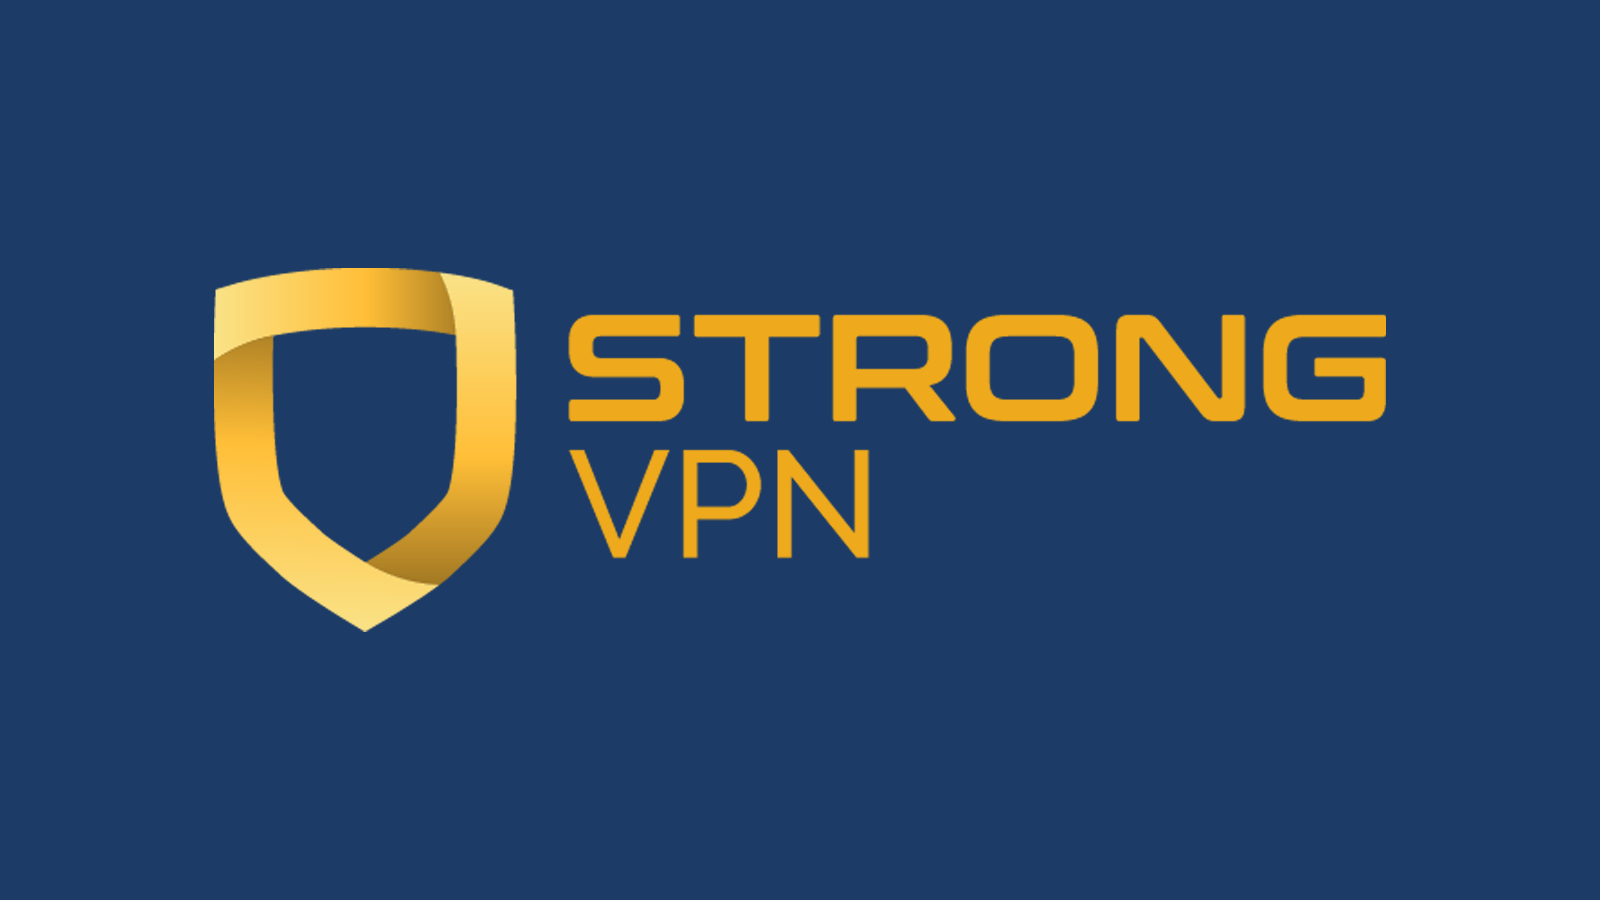 Tên và logo công ty StrongVPN trên nền tối